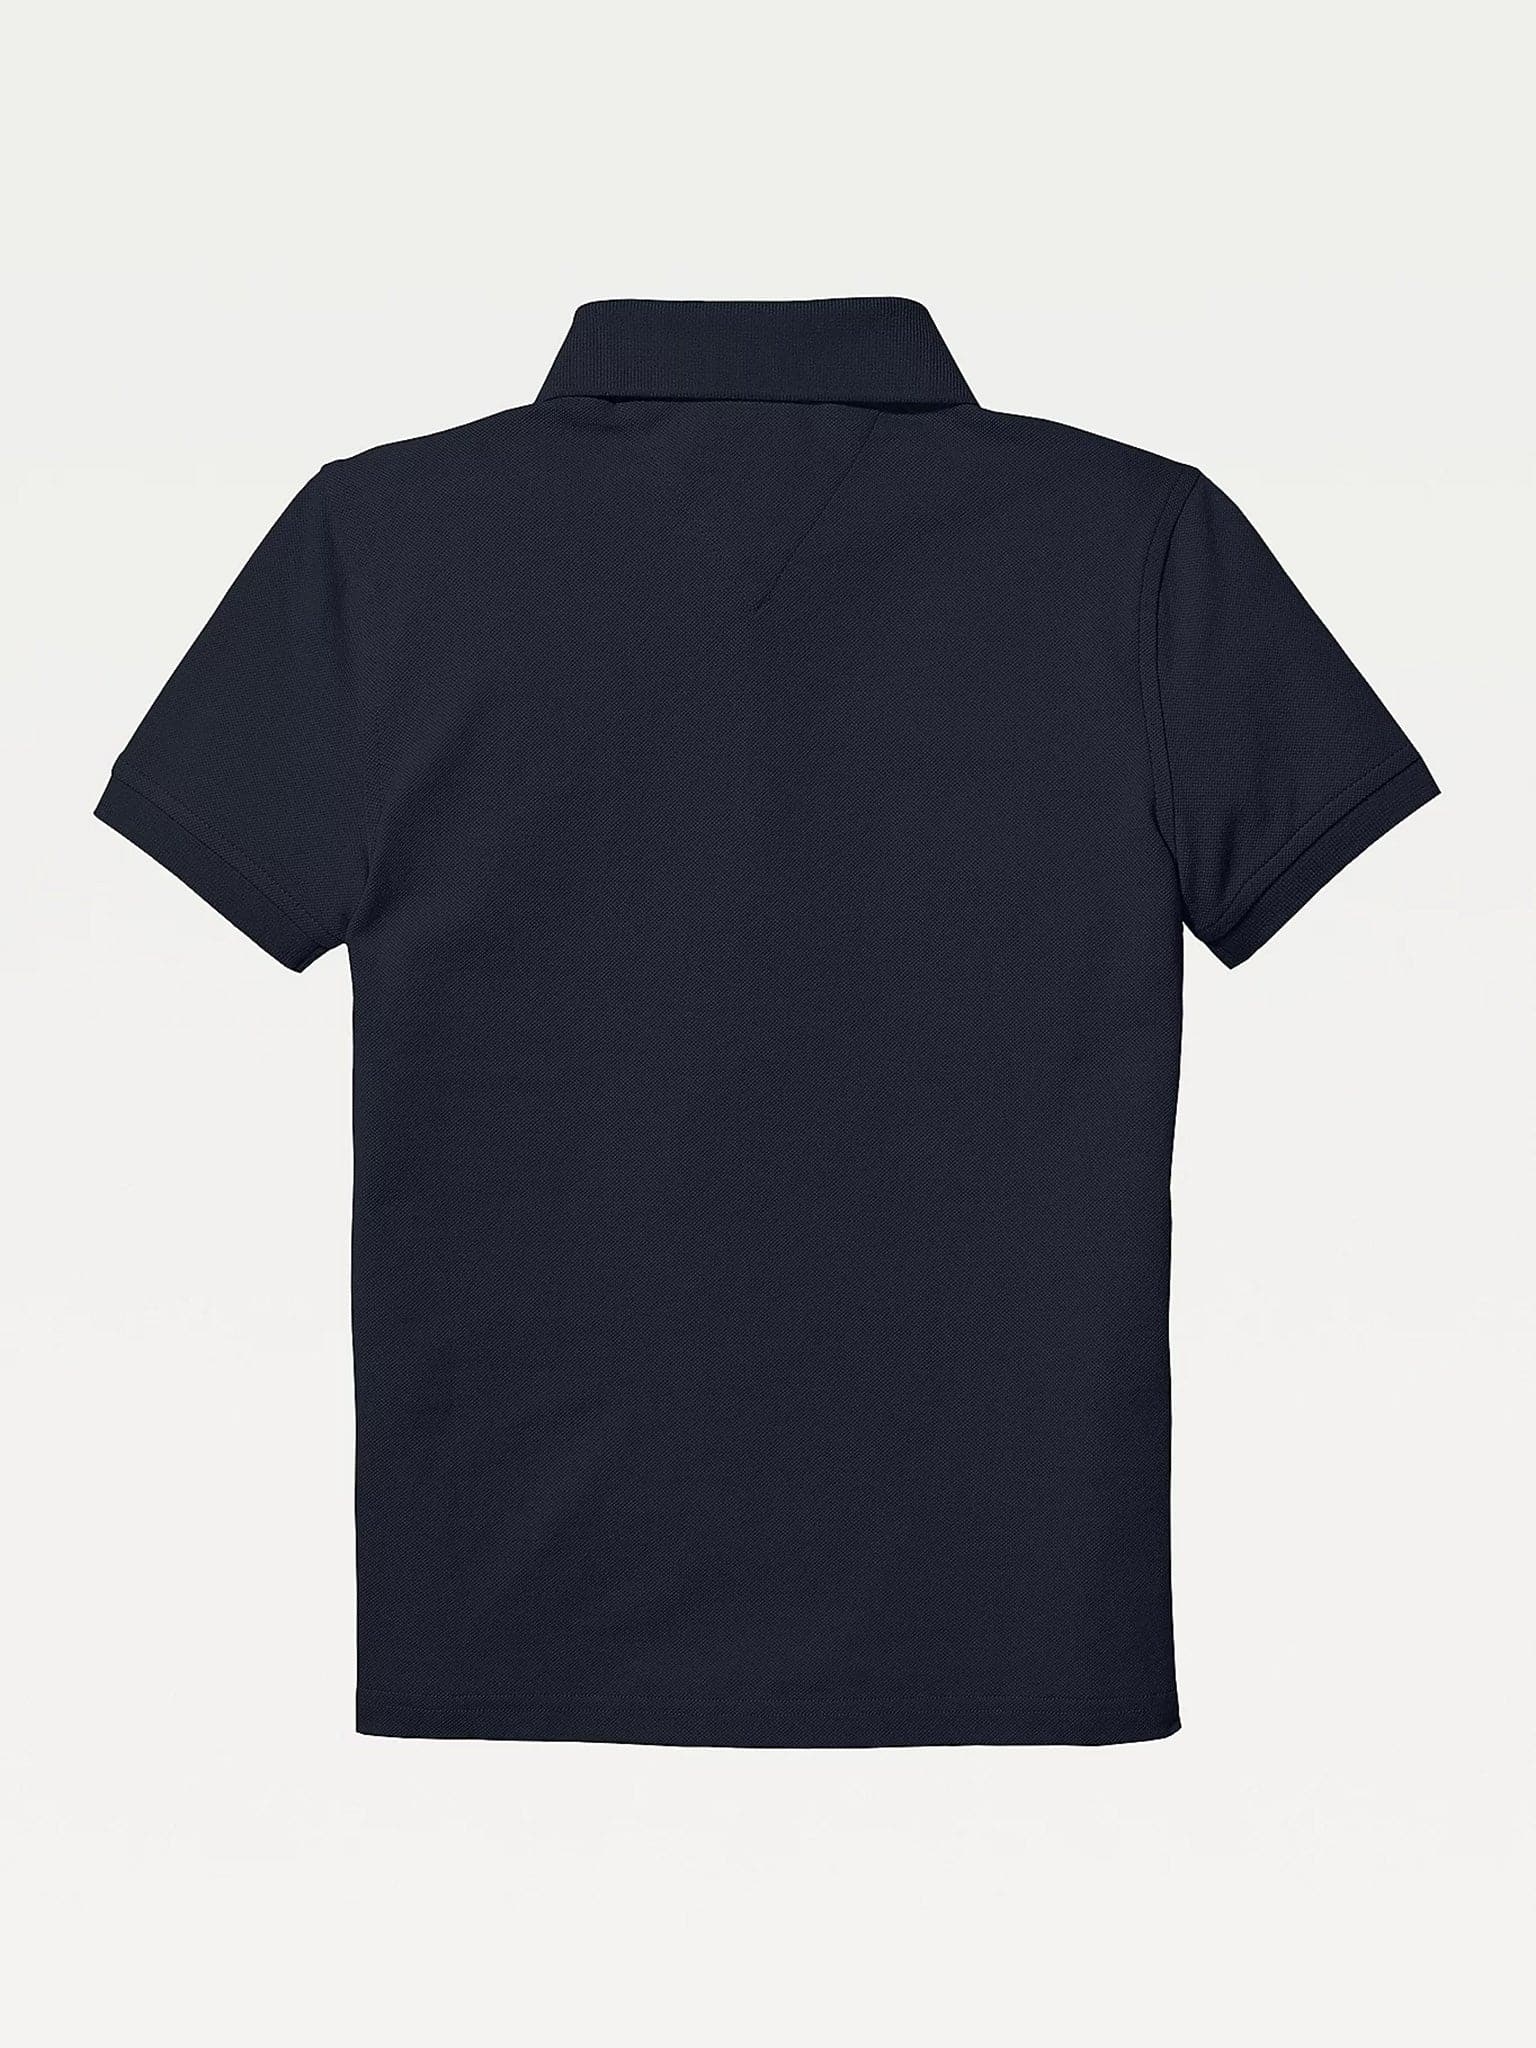 Παιδική μπλούζα polo | KB0KB03975-420